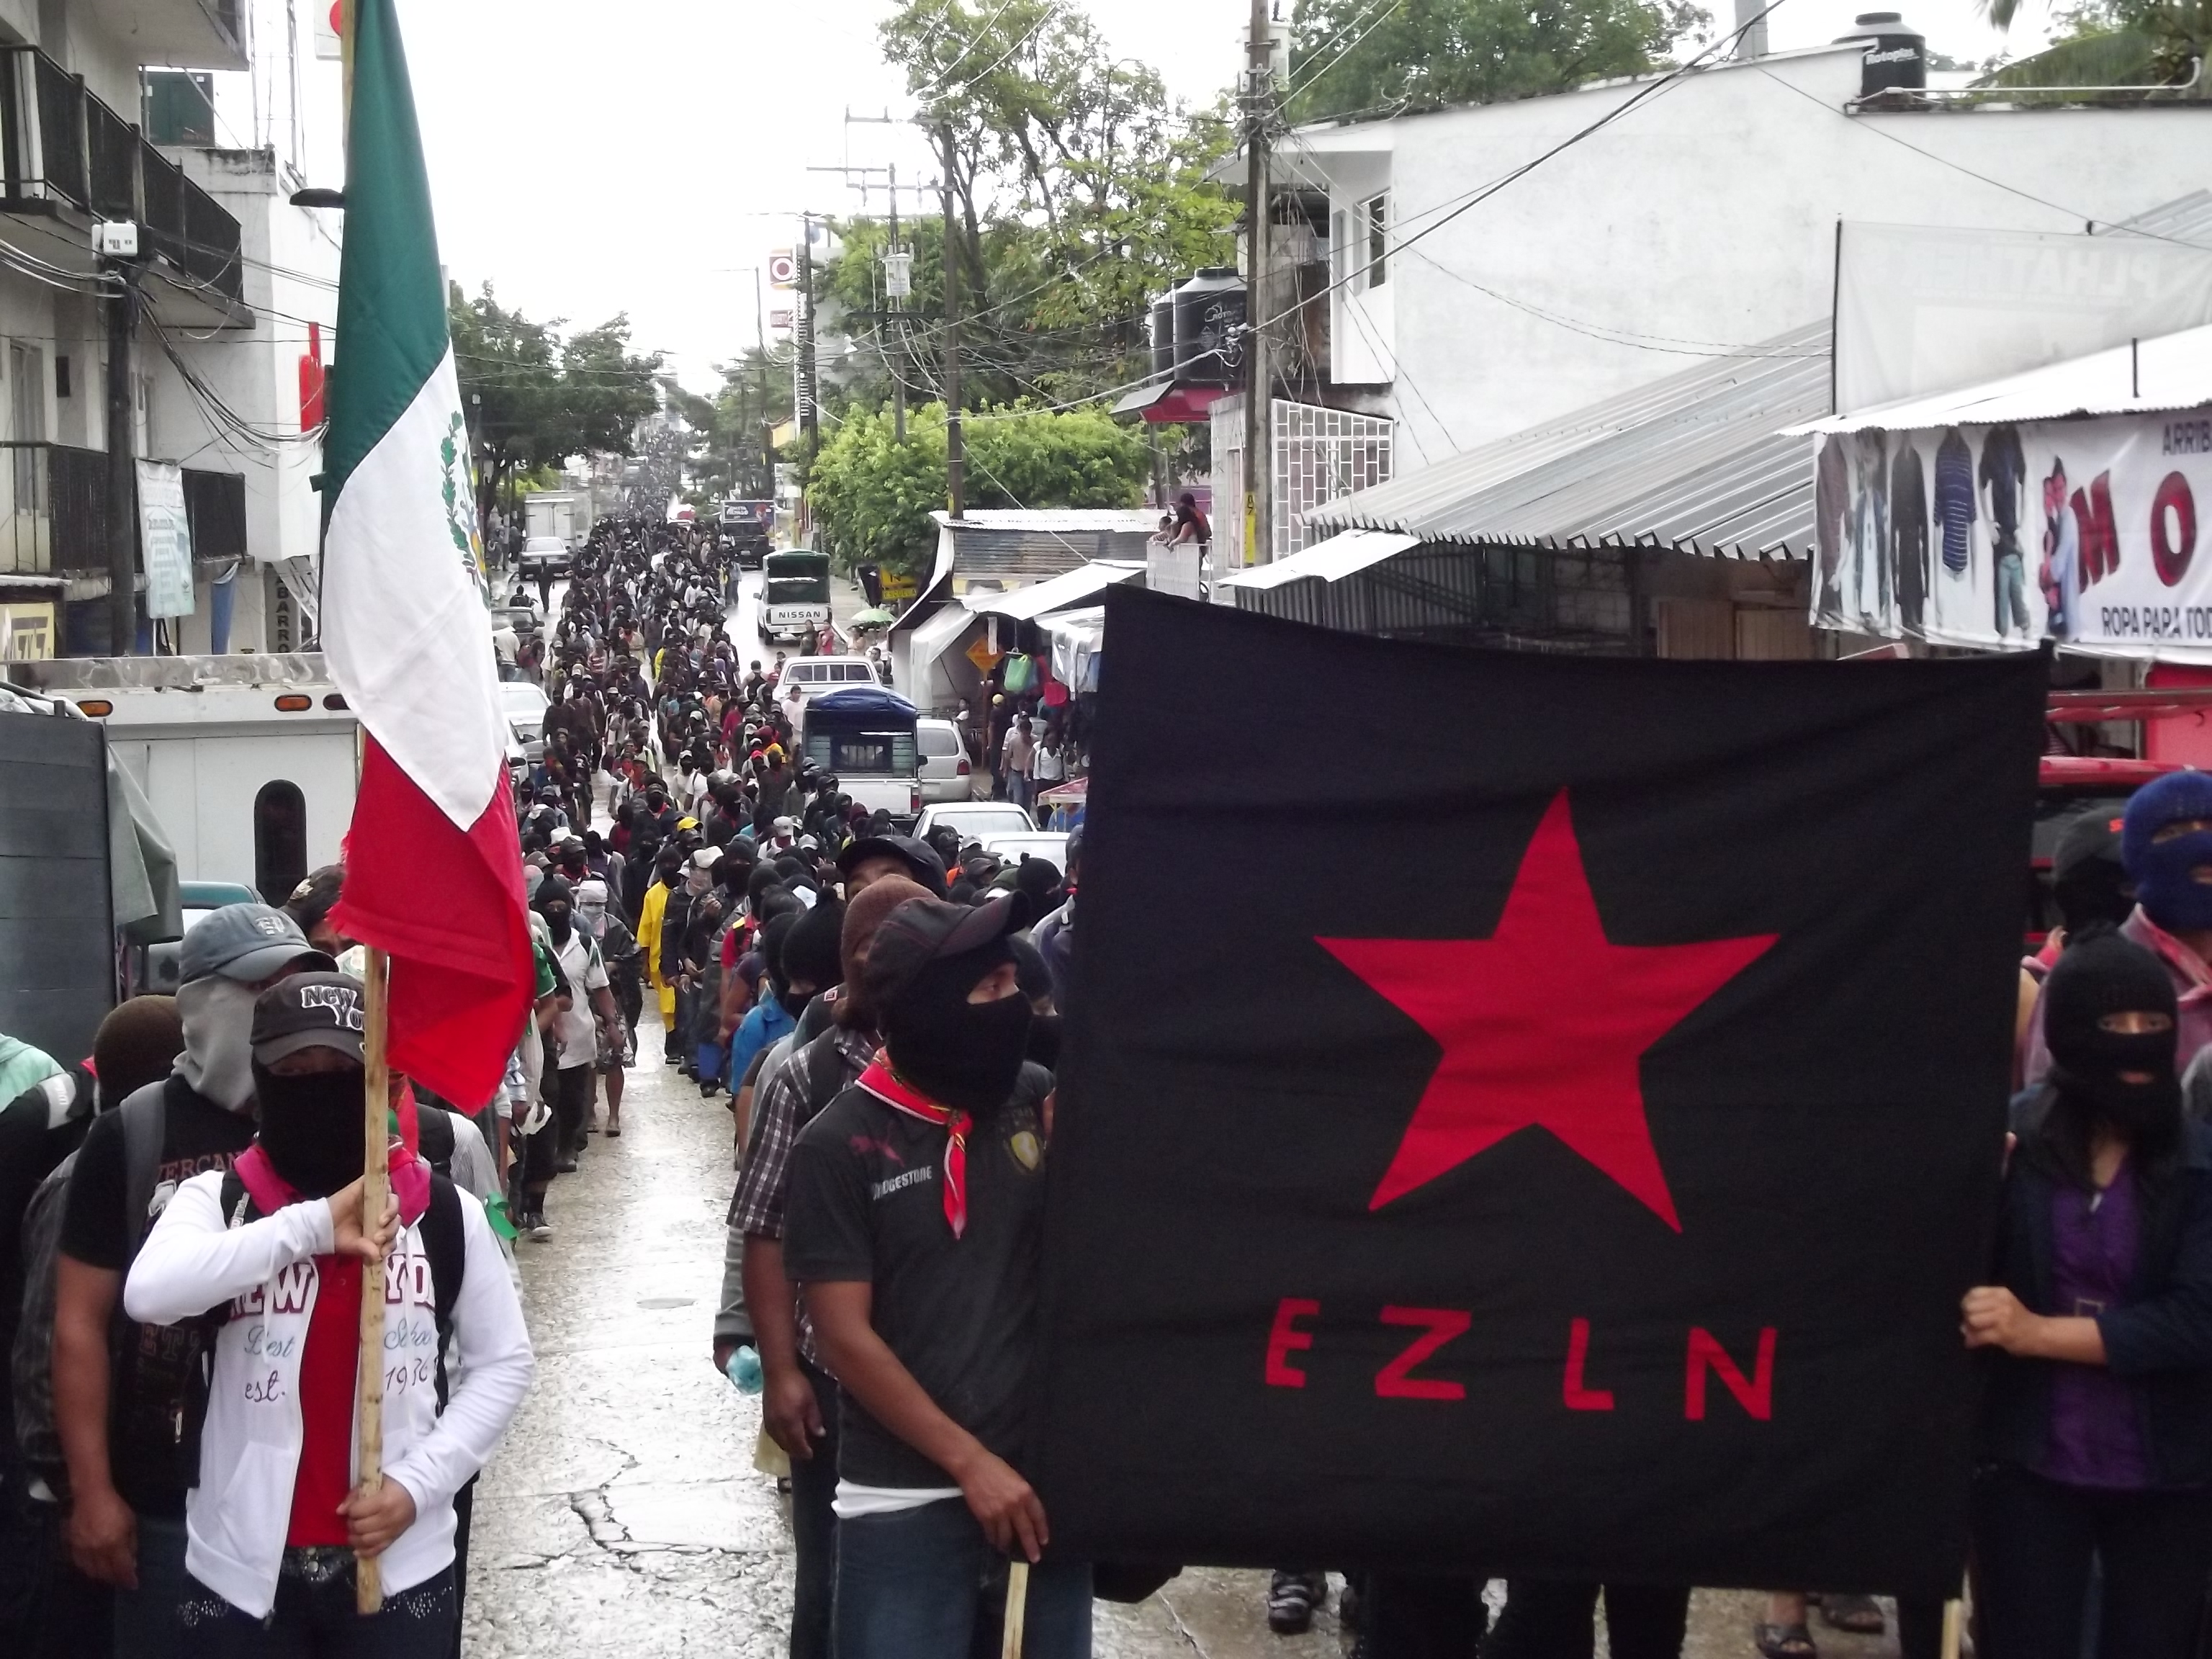 Resultado de imagen para CHIAPAS EZLN